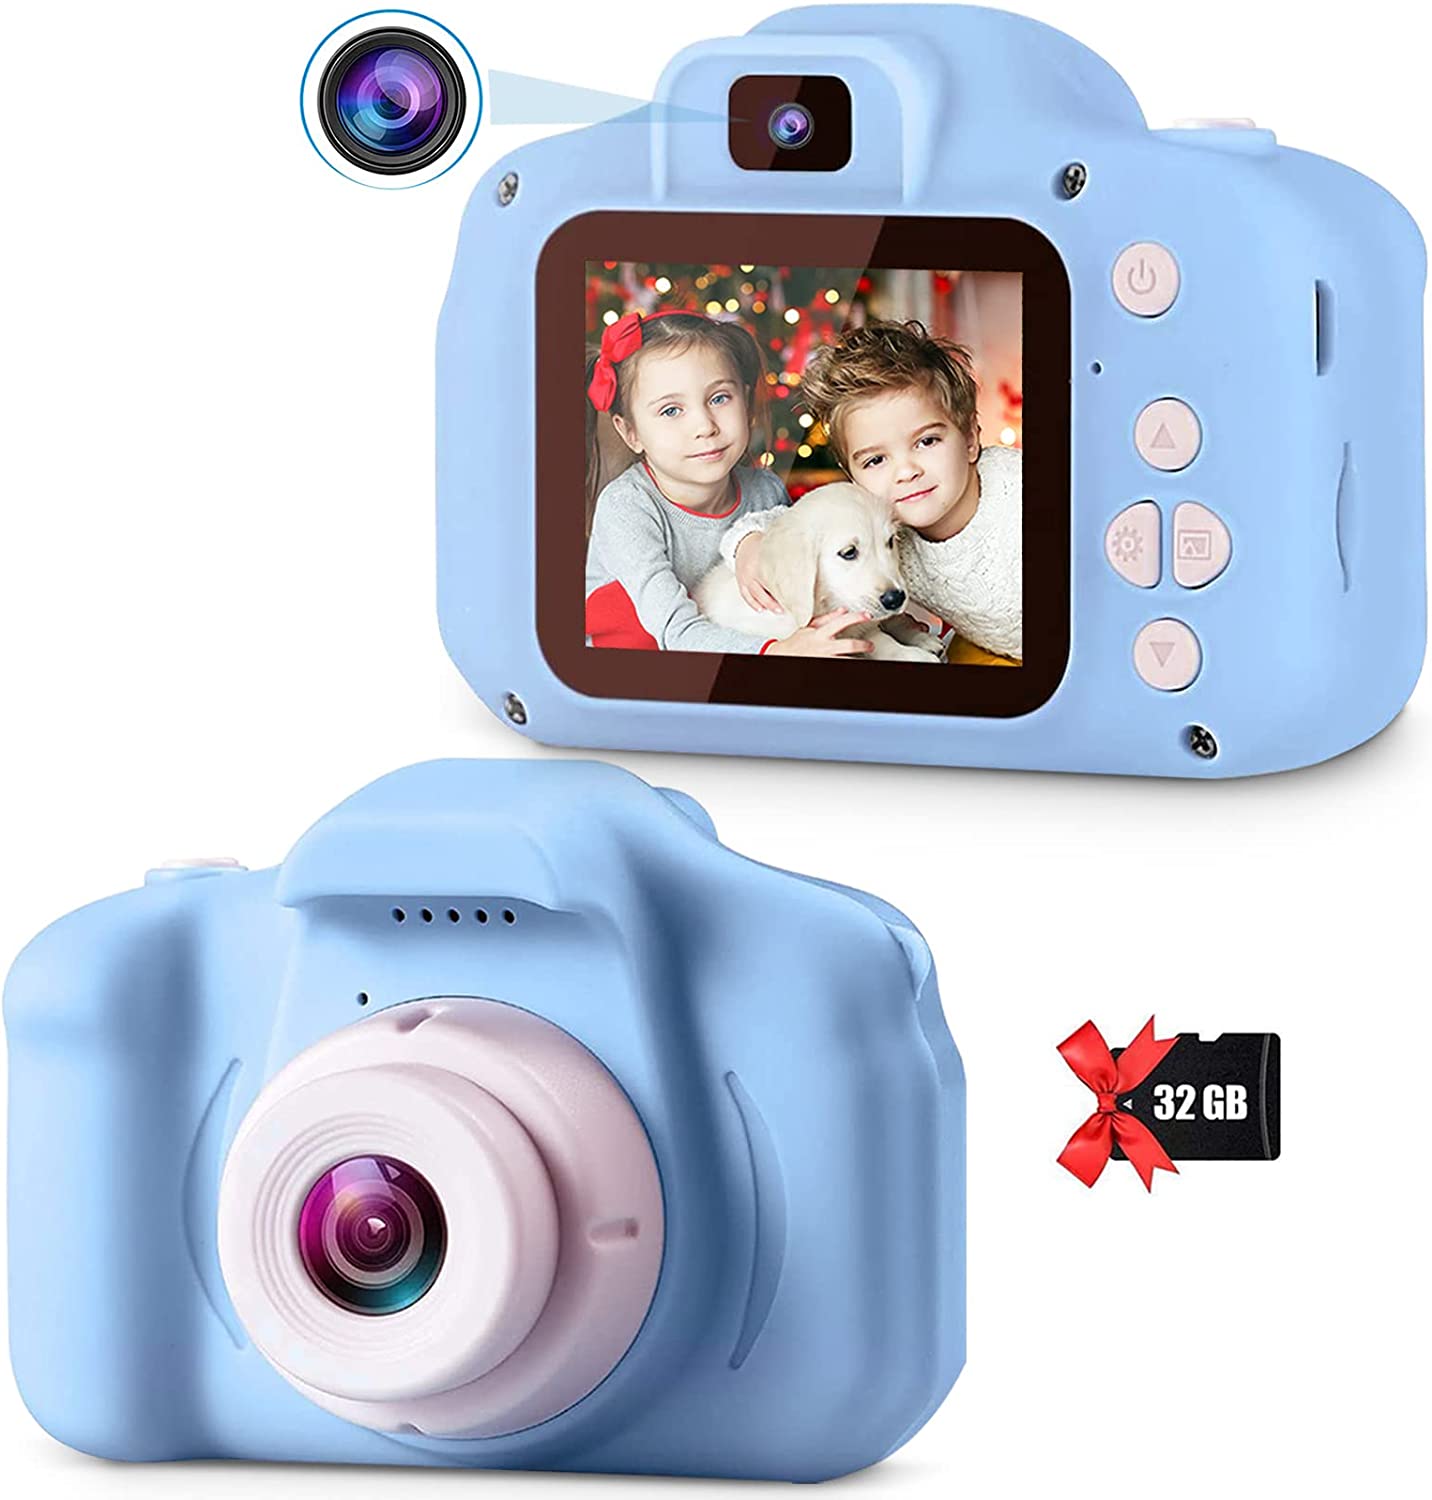 子供用カメラ男の子キッズカメラ子供用デジタルカメラ子どもトイカメラ女の子 男の子おもちゃカメラ1080P HD録画 32GB SDカード2.0インチIPS画面8倍ズーム 800mAhのバッテリータイマー撮影 3～…